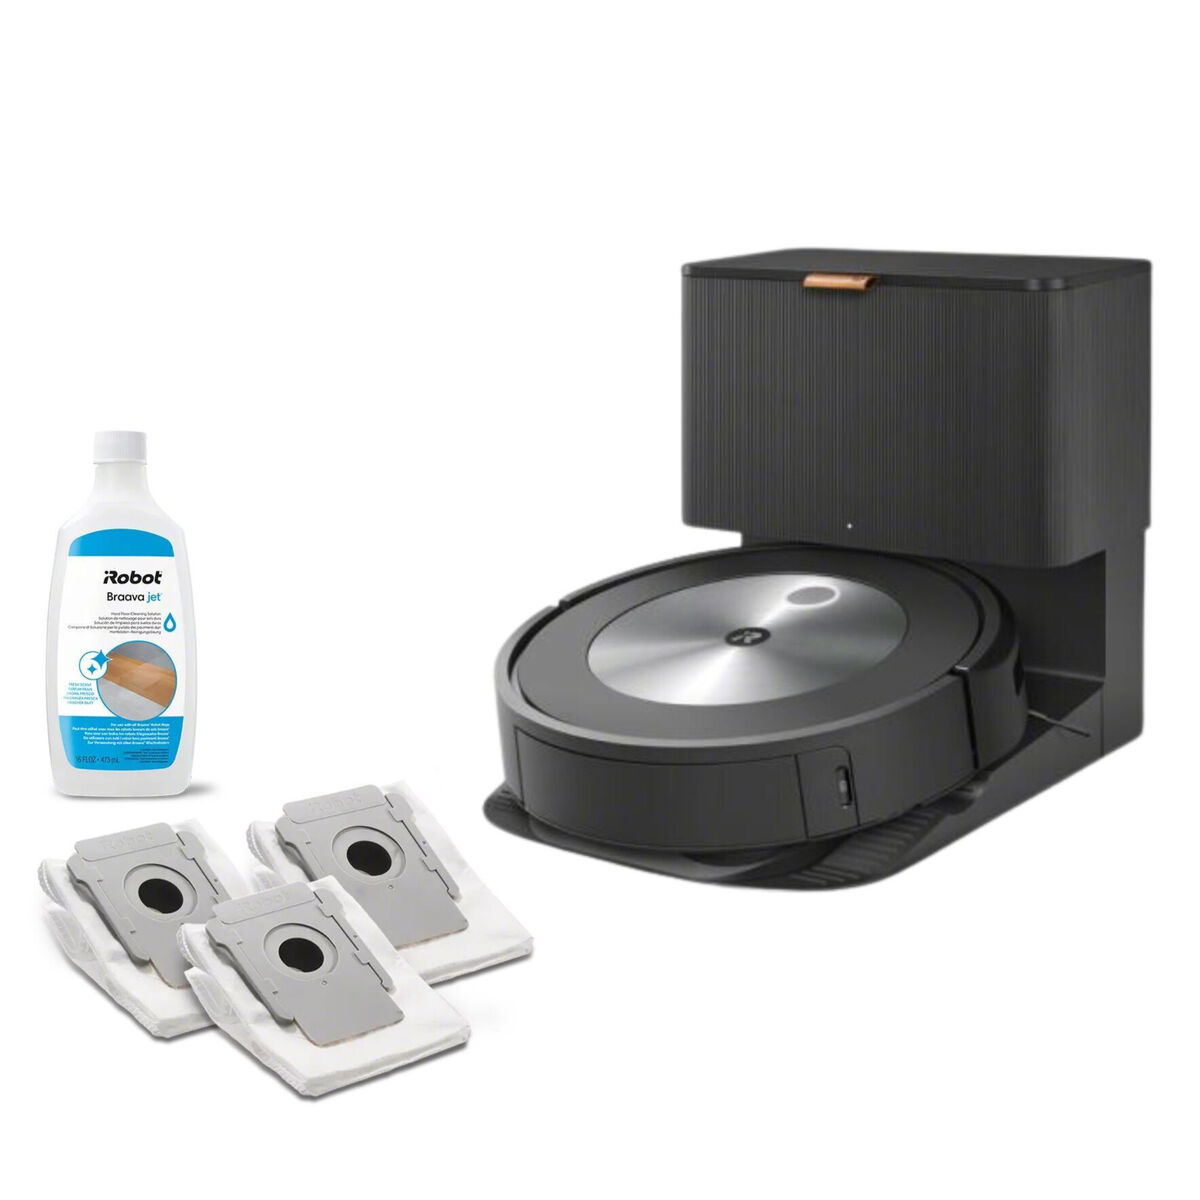 Roomba Combo® j7+ robotstofzuiger en dweilrobot + 3x vuilafvoerzak + schoonmaakproduct voor harde vloeren, , large image number 0